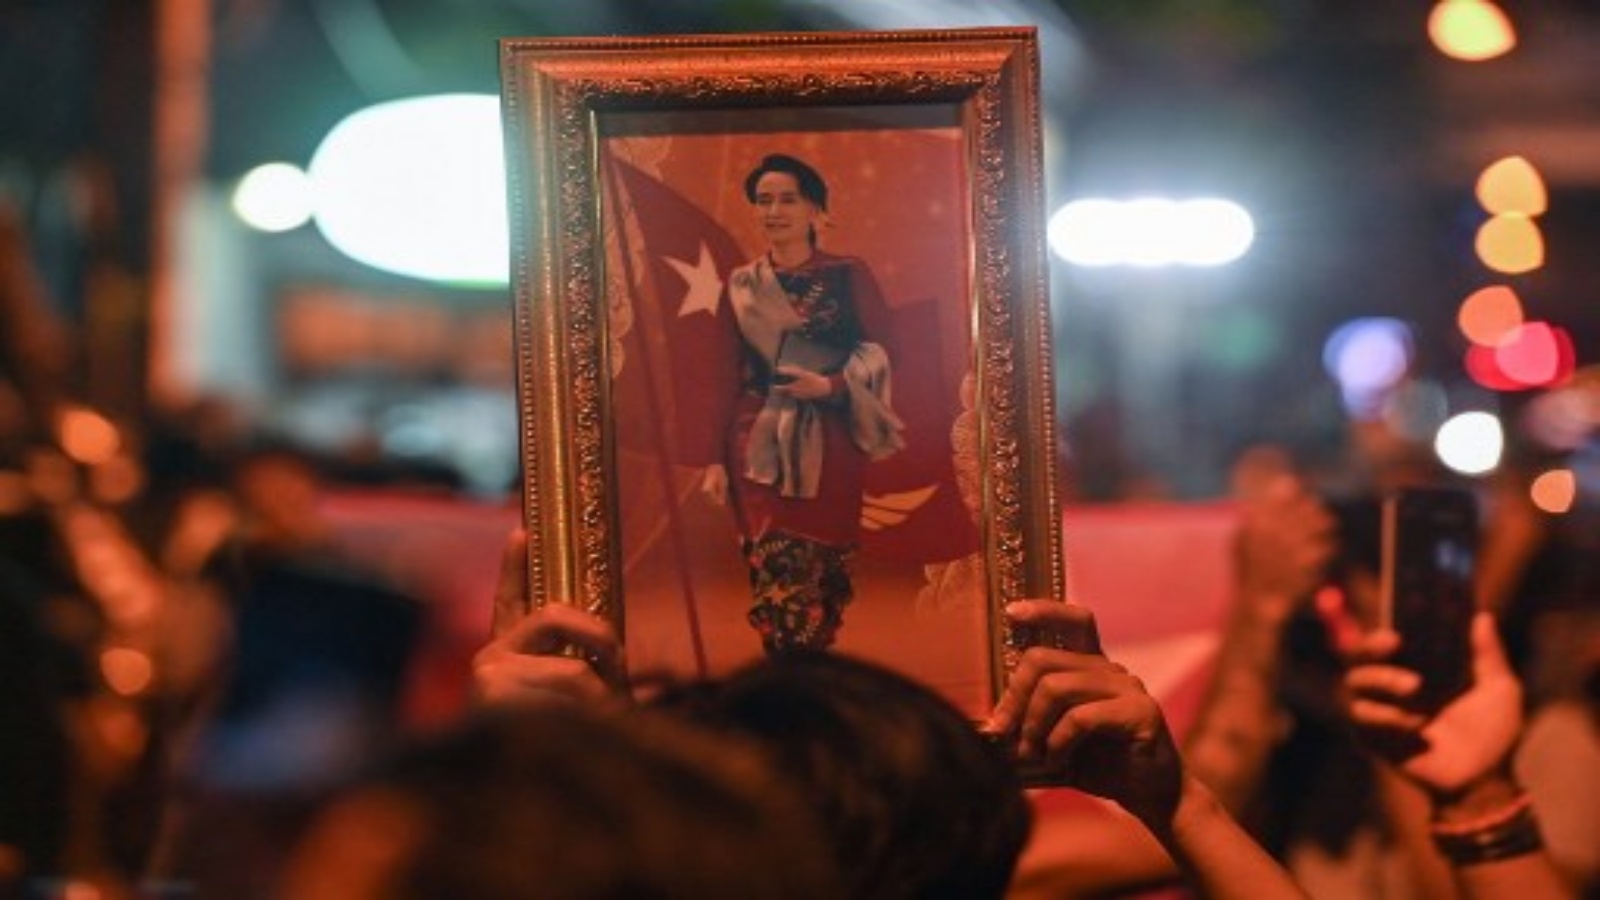 متظاهر يحمل صورة مؤطرة للزعيم المدني الميانماري المحتجز أونغ سان سو كي خلال مظاهرة تدين الانقلاب العسكري خارج سفارة ميانمار في بانكوك في 4 فبراير 2021 ، بعد أيام من اعتقال قوات الأمن الميانمارية لسو كي ورئيس البلاد.